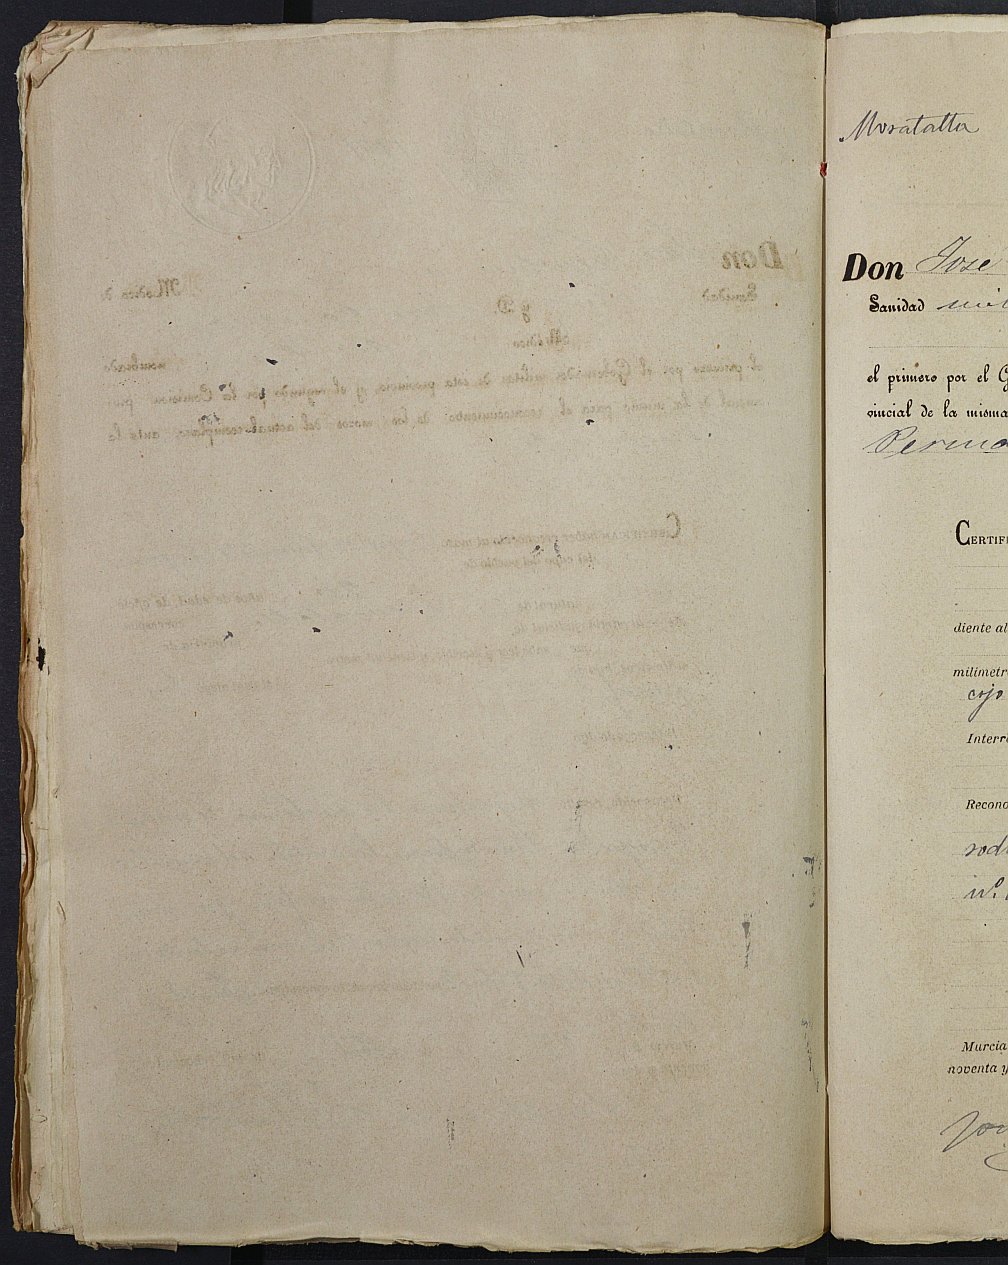 Copia certificada del expediente general de Quintas del Ayuntamiento de Moratalla del reemplazo de 1891.